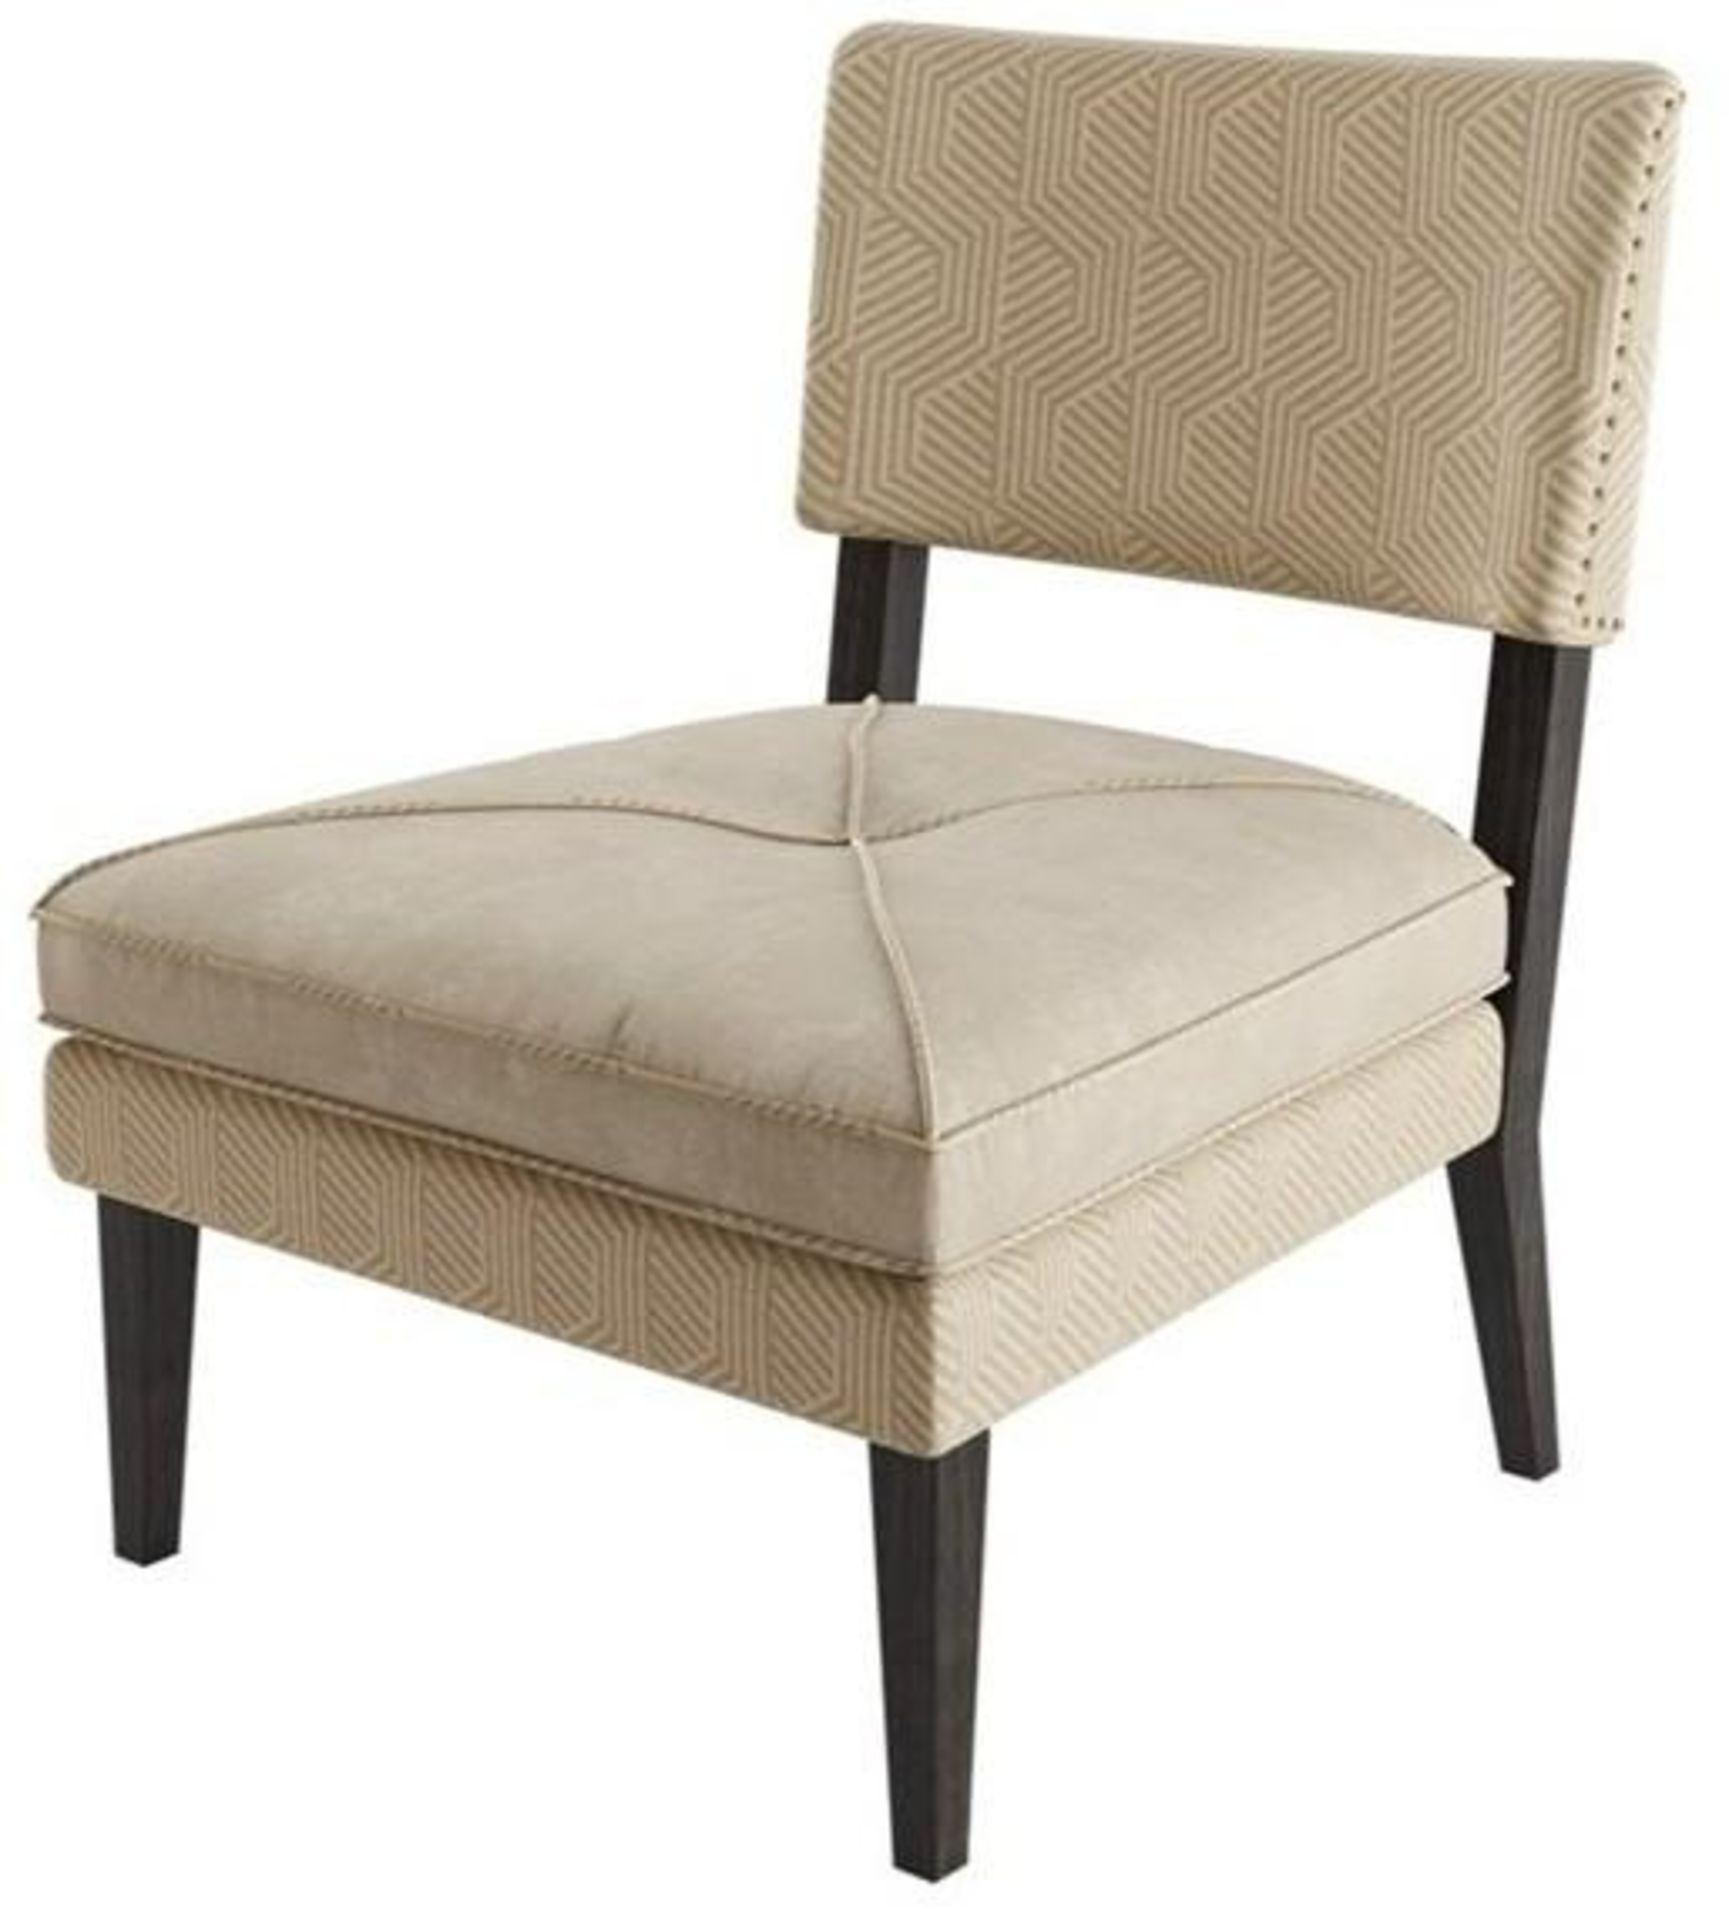 1 x FRATO 'Basel' Designer Velvet Upholstered Easy Chair - Original Price £1,259.00